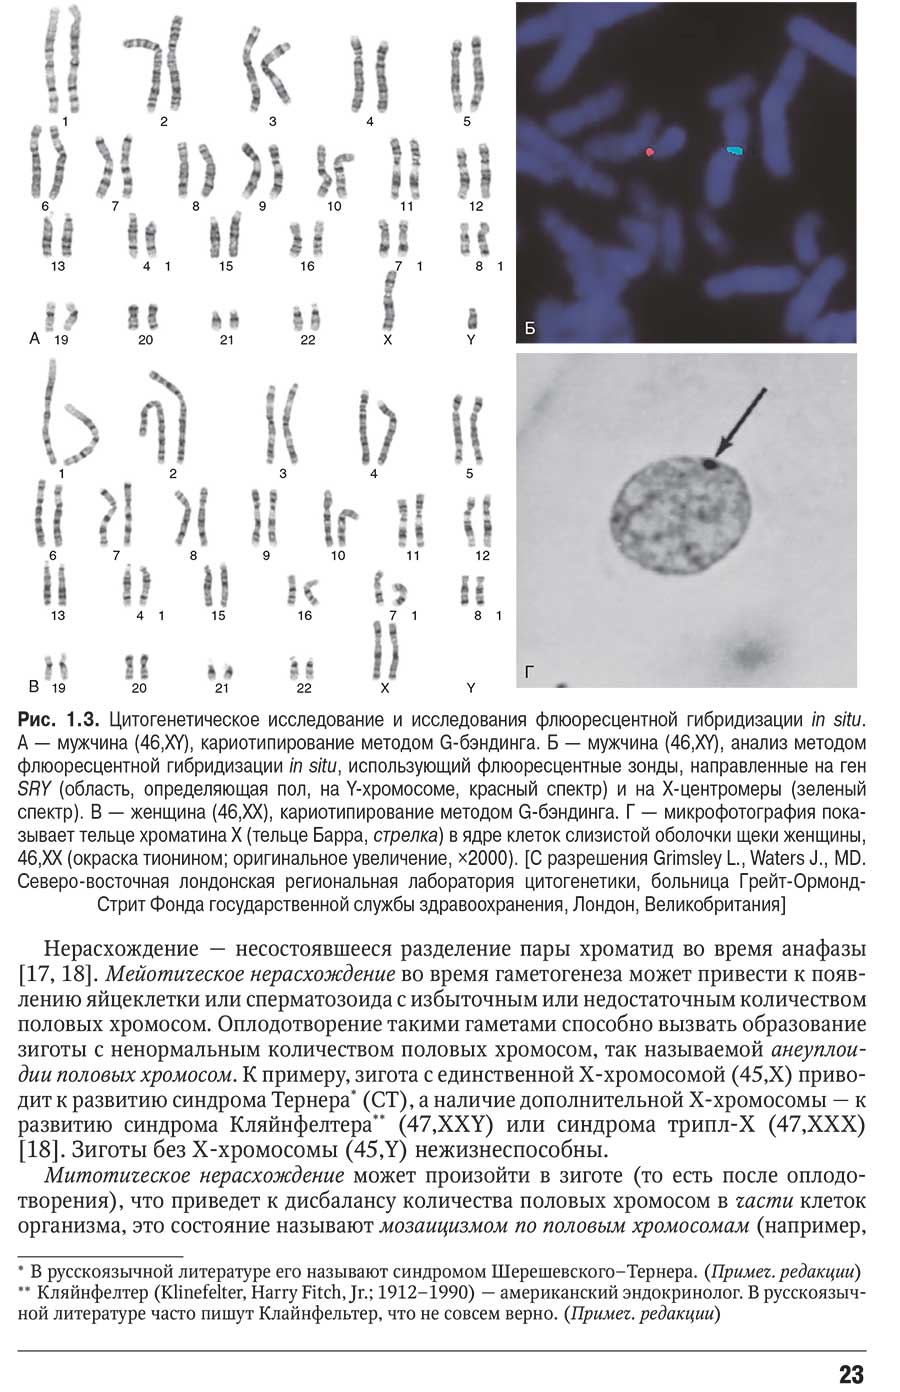 Рис. 1.3. Цитогенетическое исследование и исследования флюоресцентной гибридизации